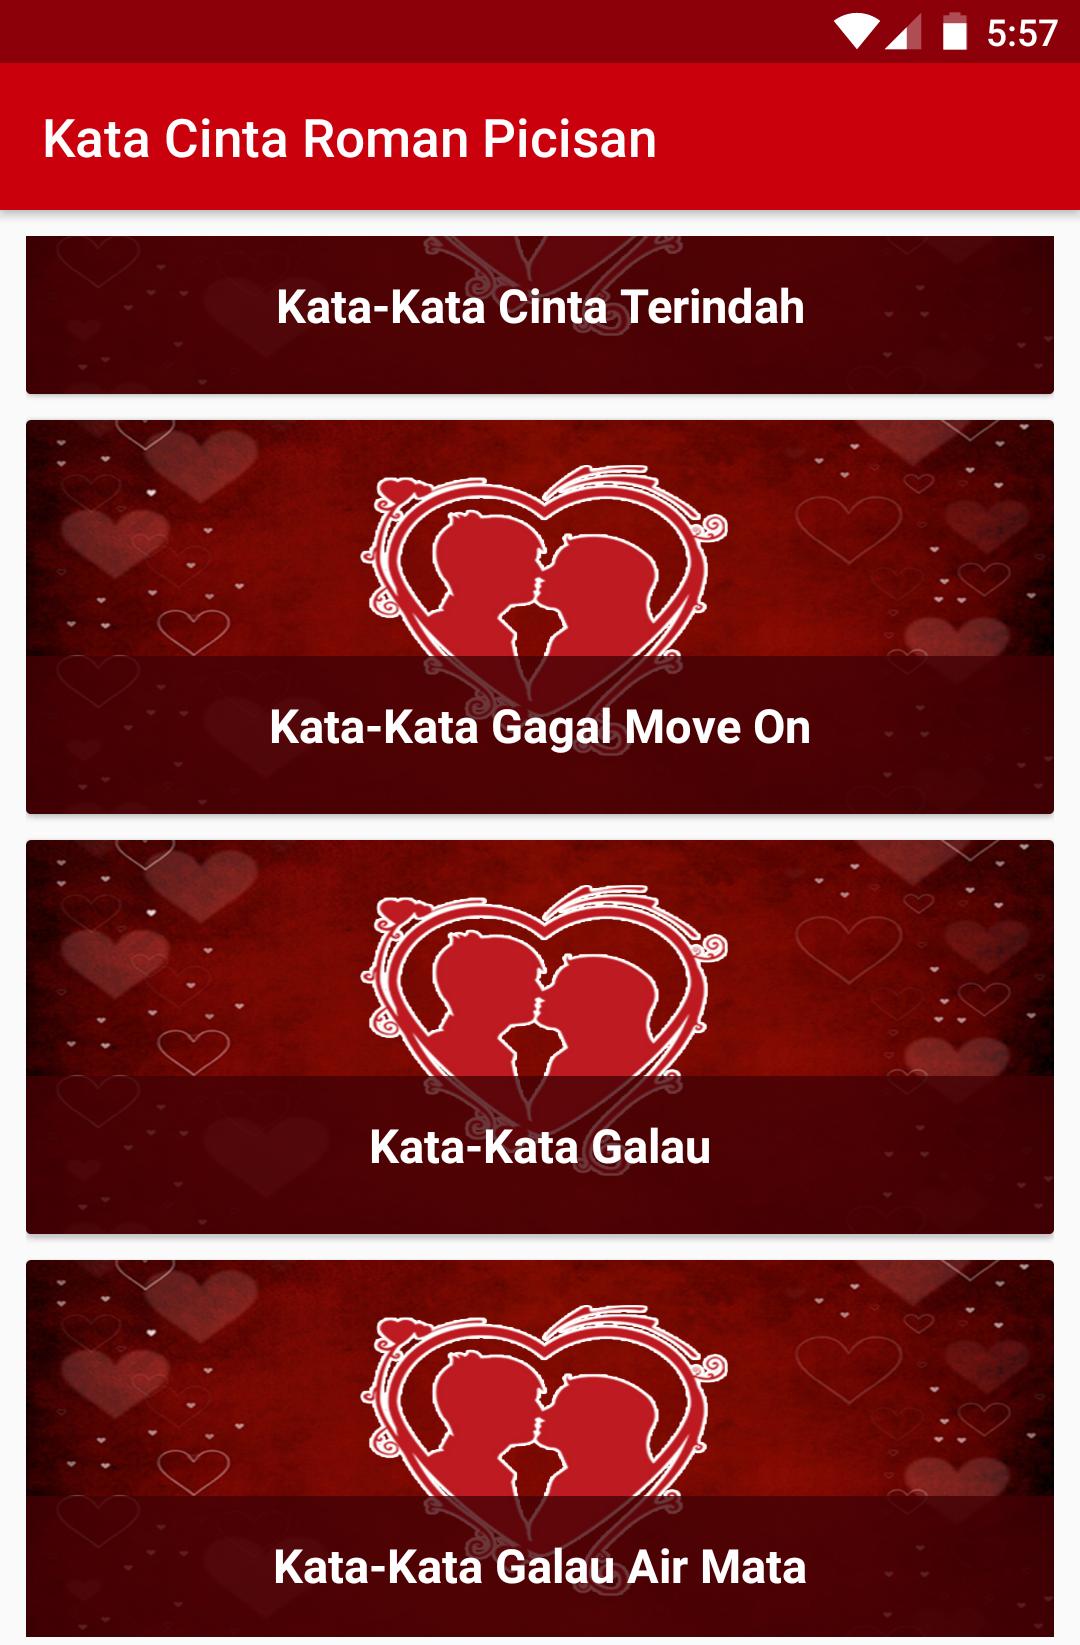 Kata Kata Cinta Roman Picisan For Android Apk Download